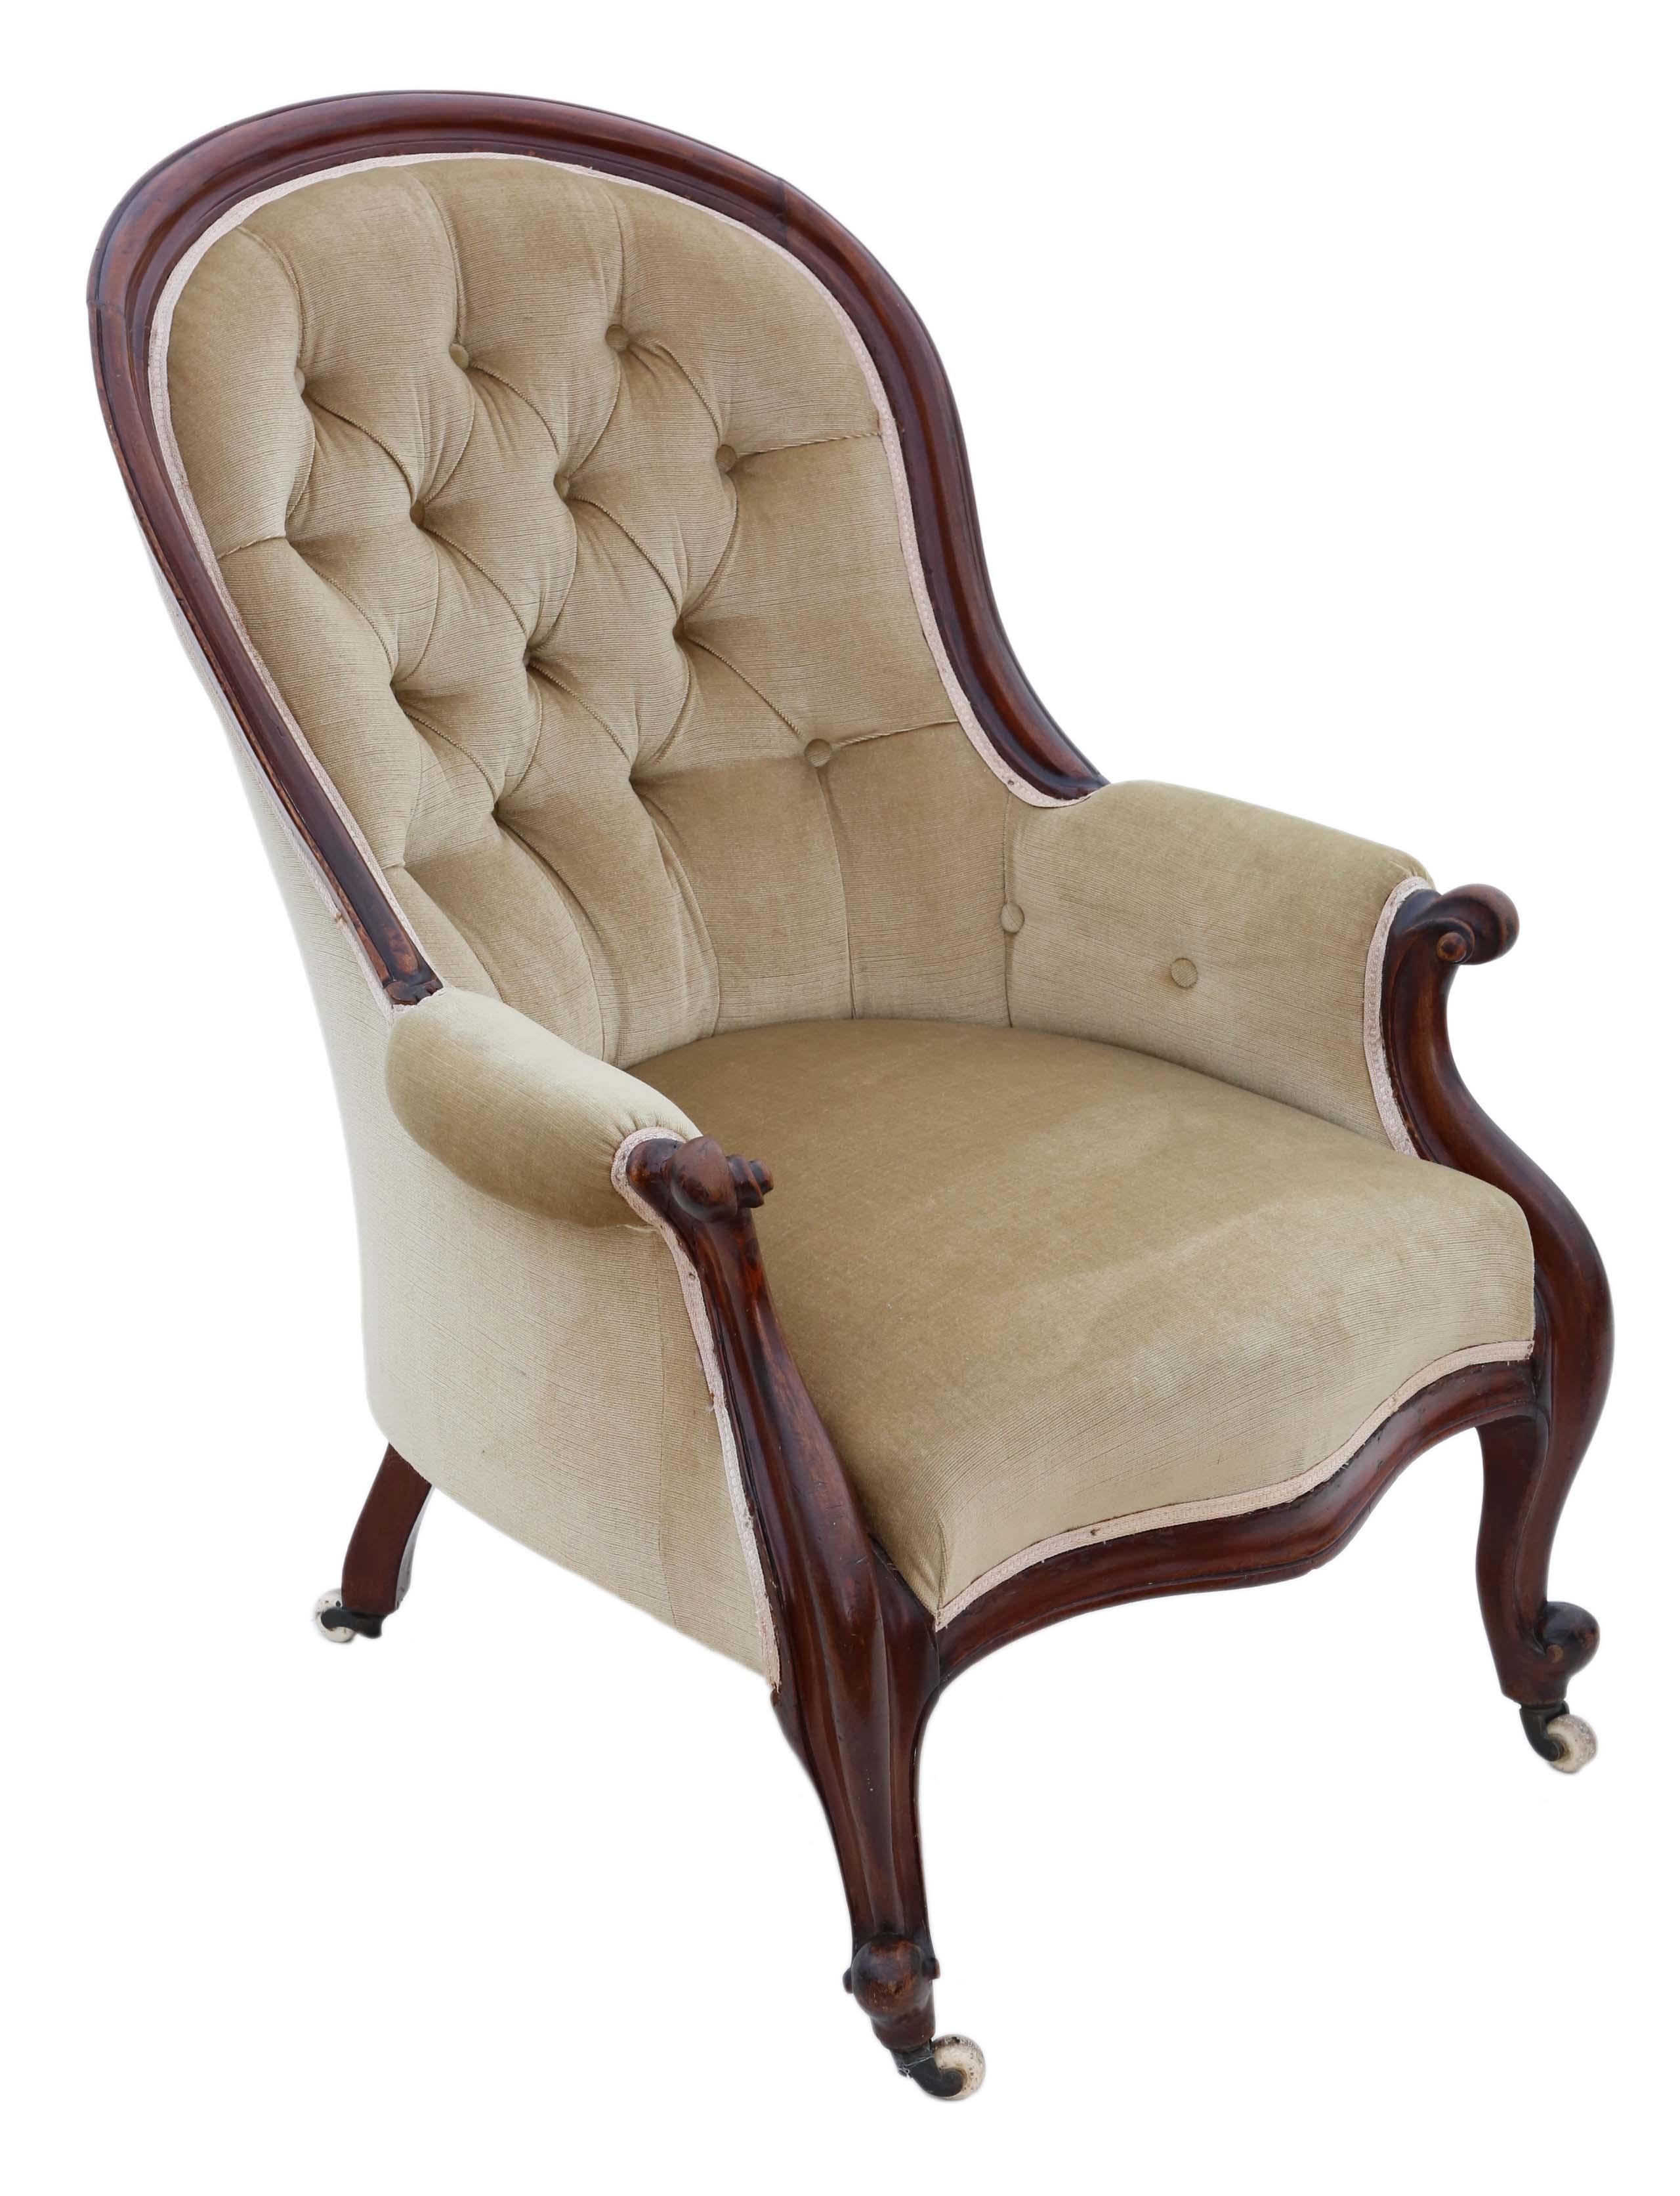 antique victorian slipper chair